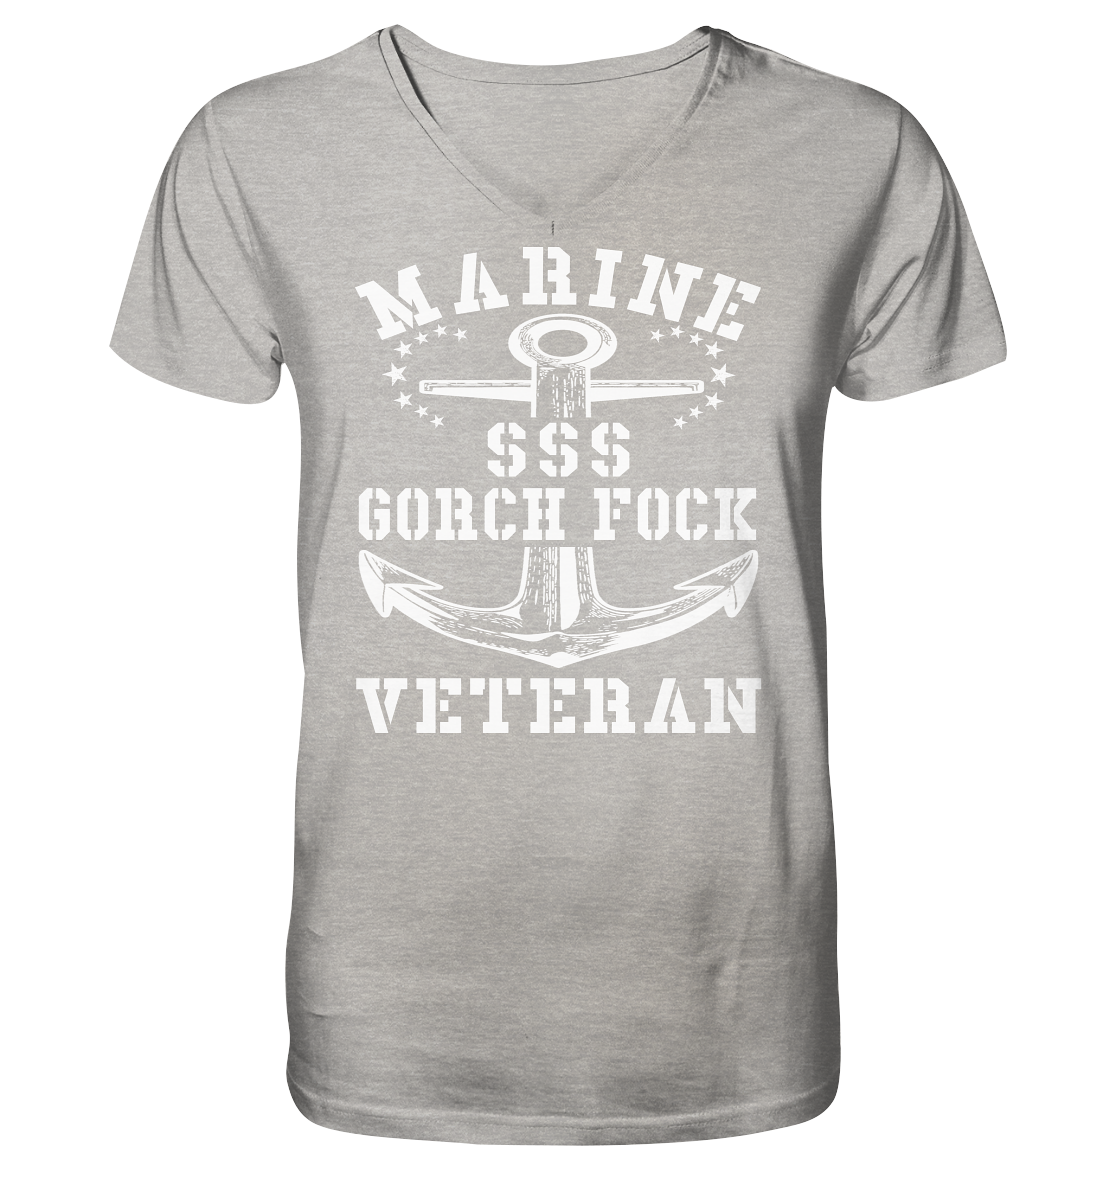 SSS GORCH FOCK MARINE VETERAN  - Mens Organic V-Neck Shirt